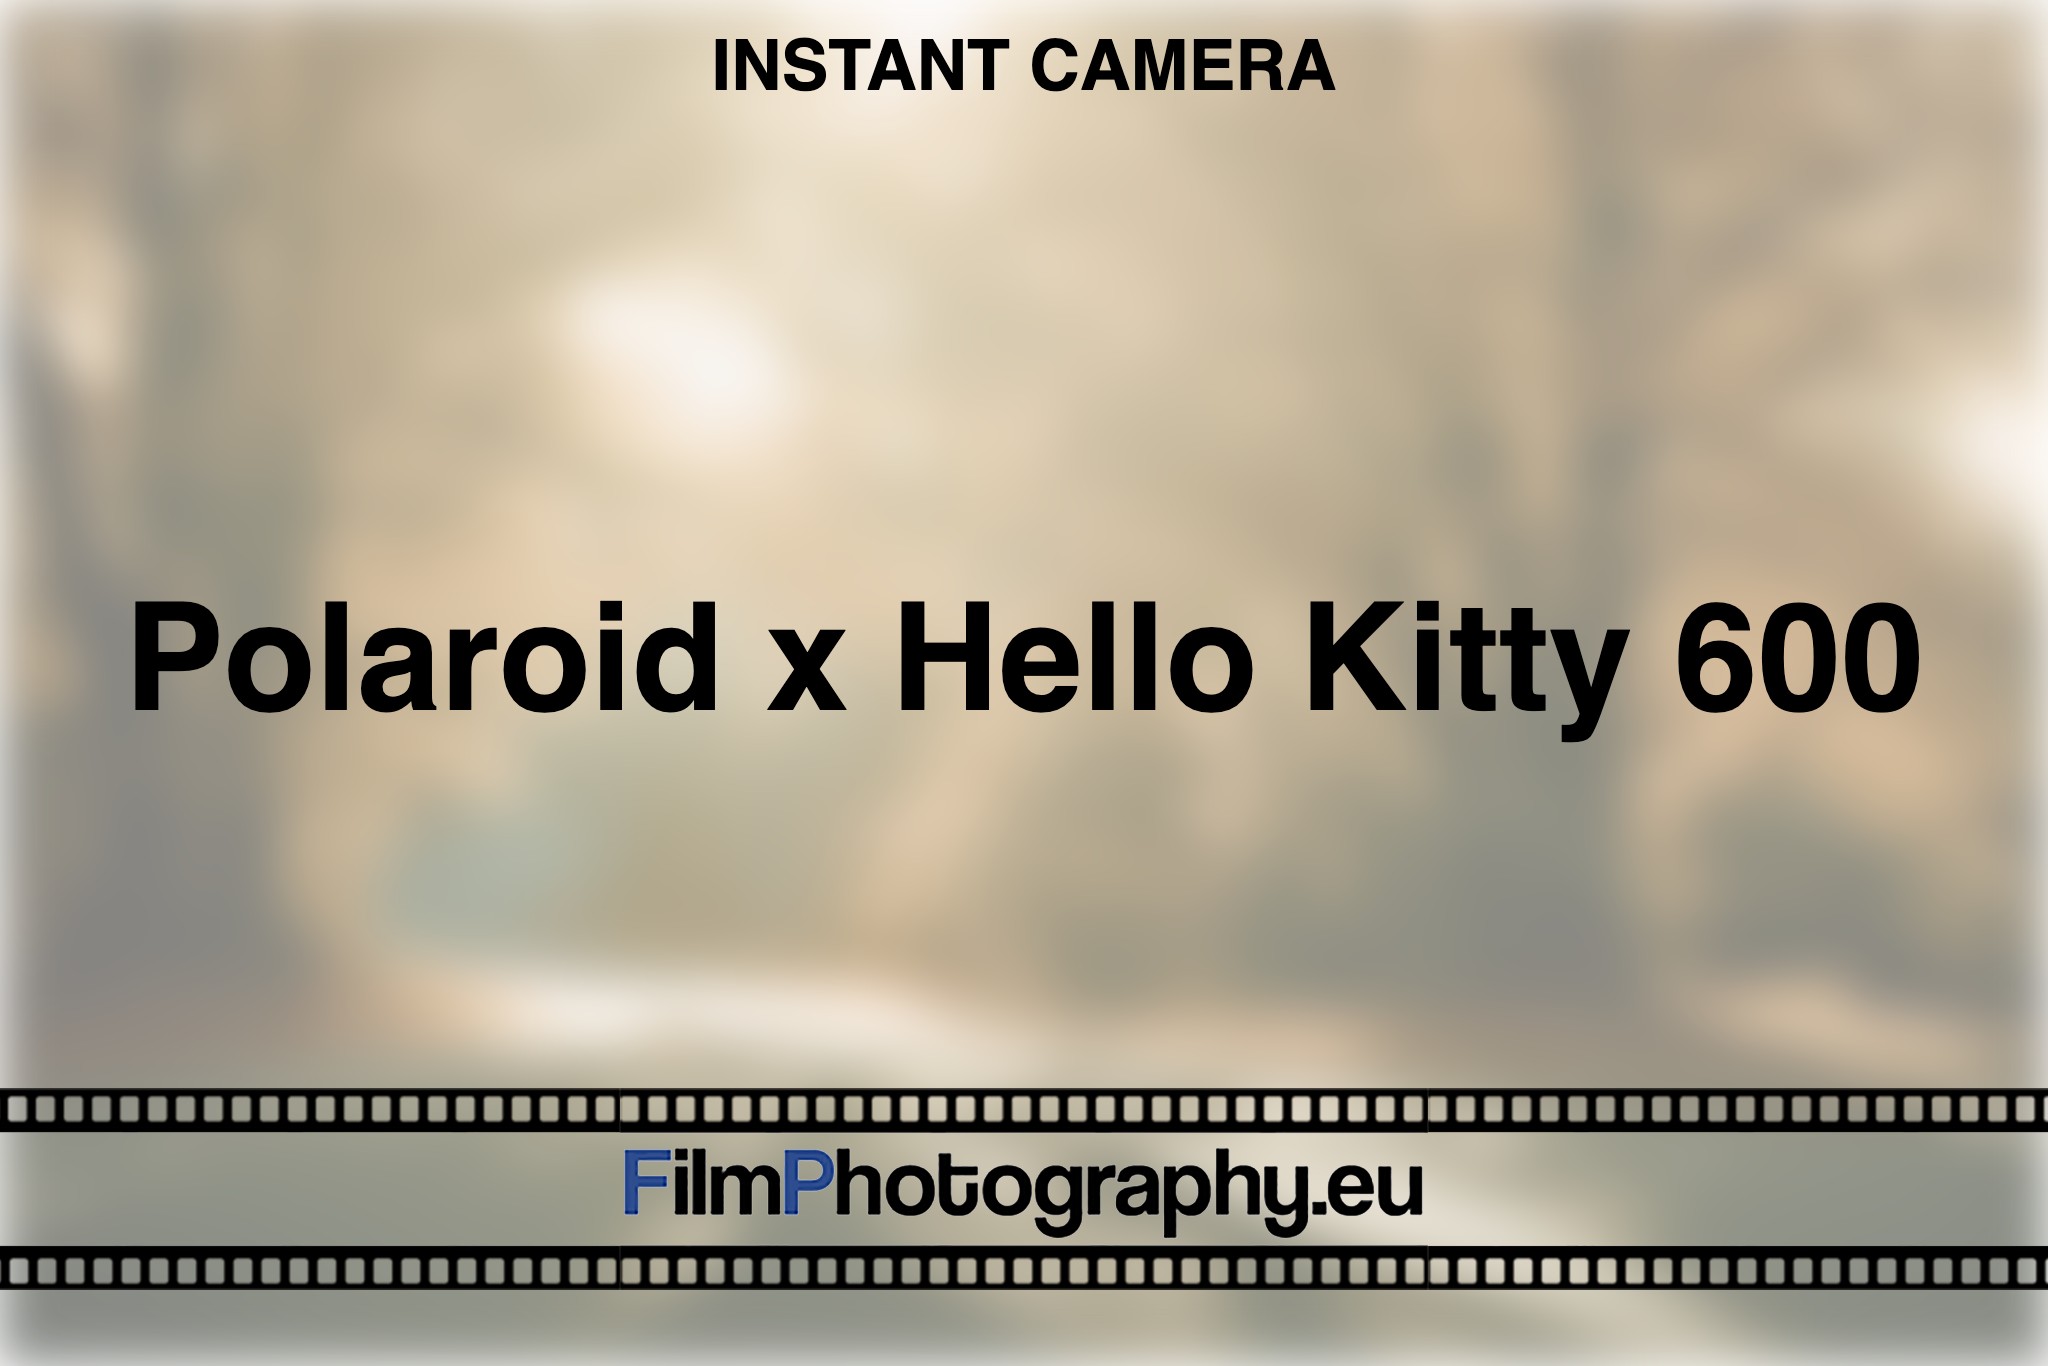 polaroid-x-hello-kitty-600-instant-camera-bnv